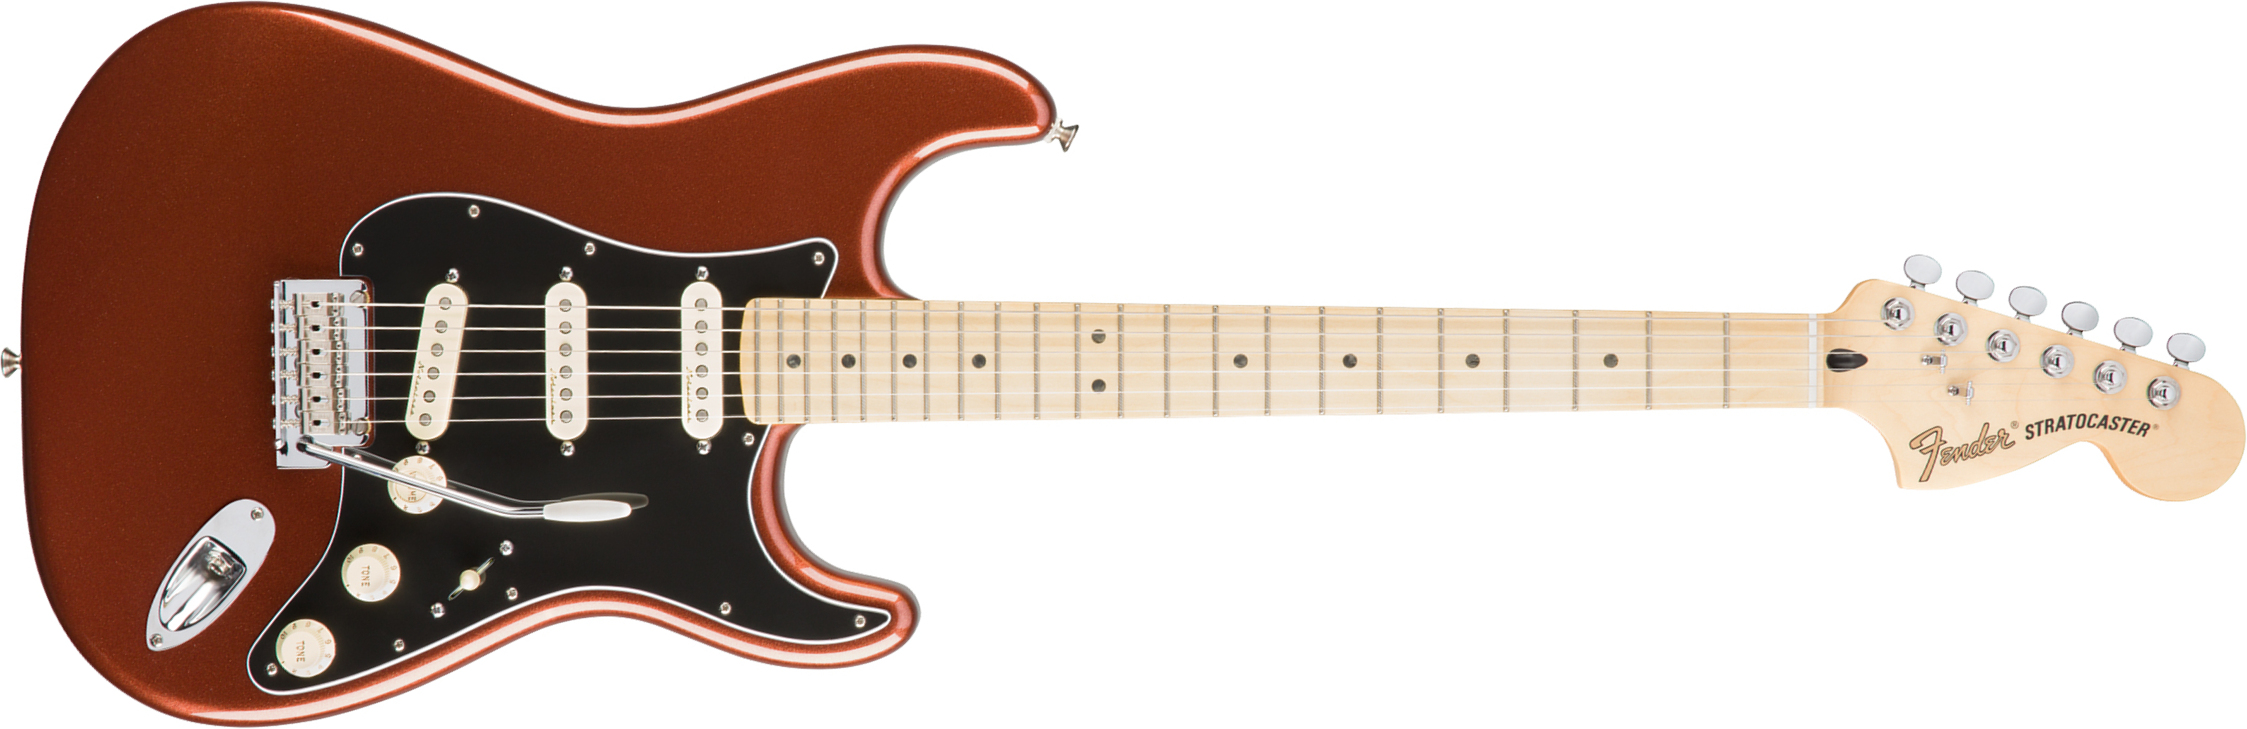 Fender Strat Deluxe Roadhouse Mex Mn - Classic Copper - E-Gitarre in Str-Form - Main picture